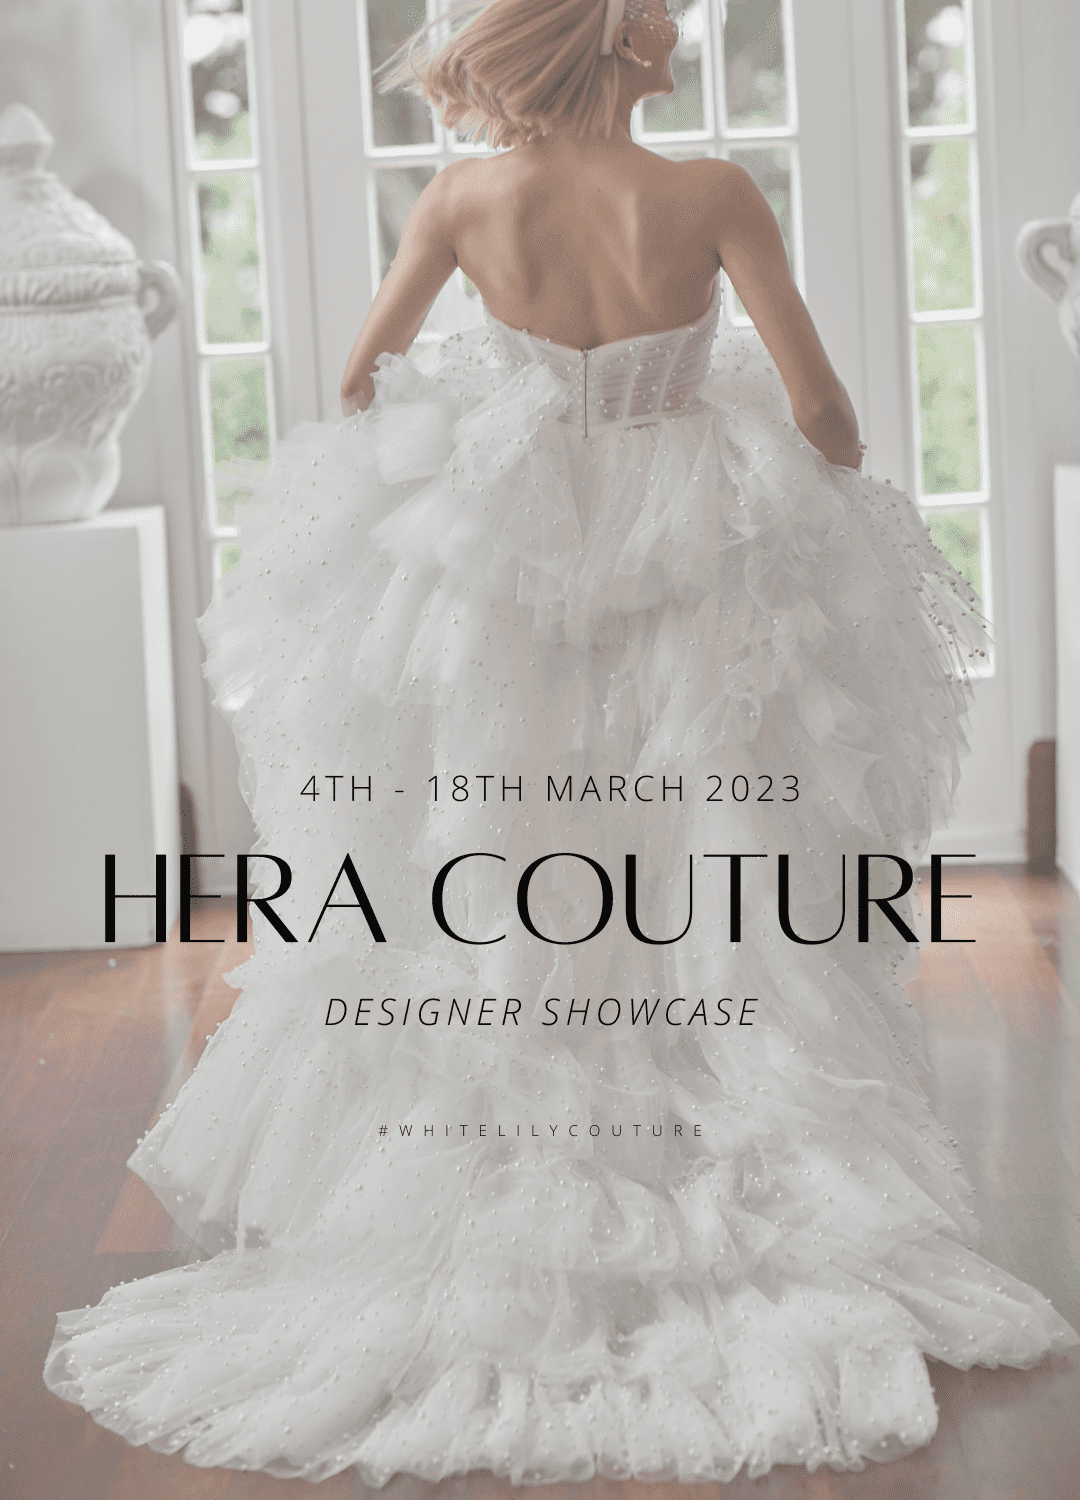 2023 Hera Couture Designer Showcase - White Lily Couture